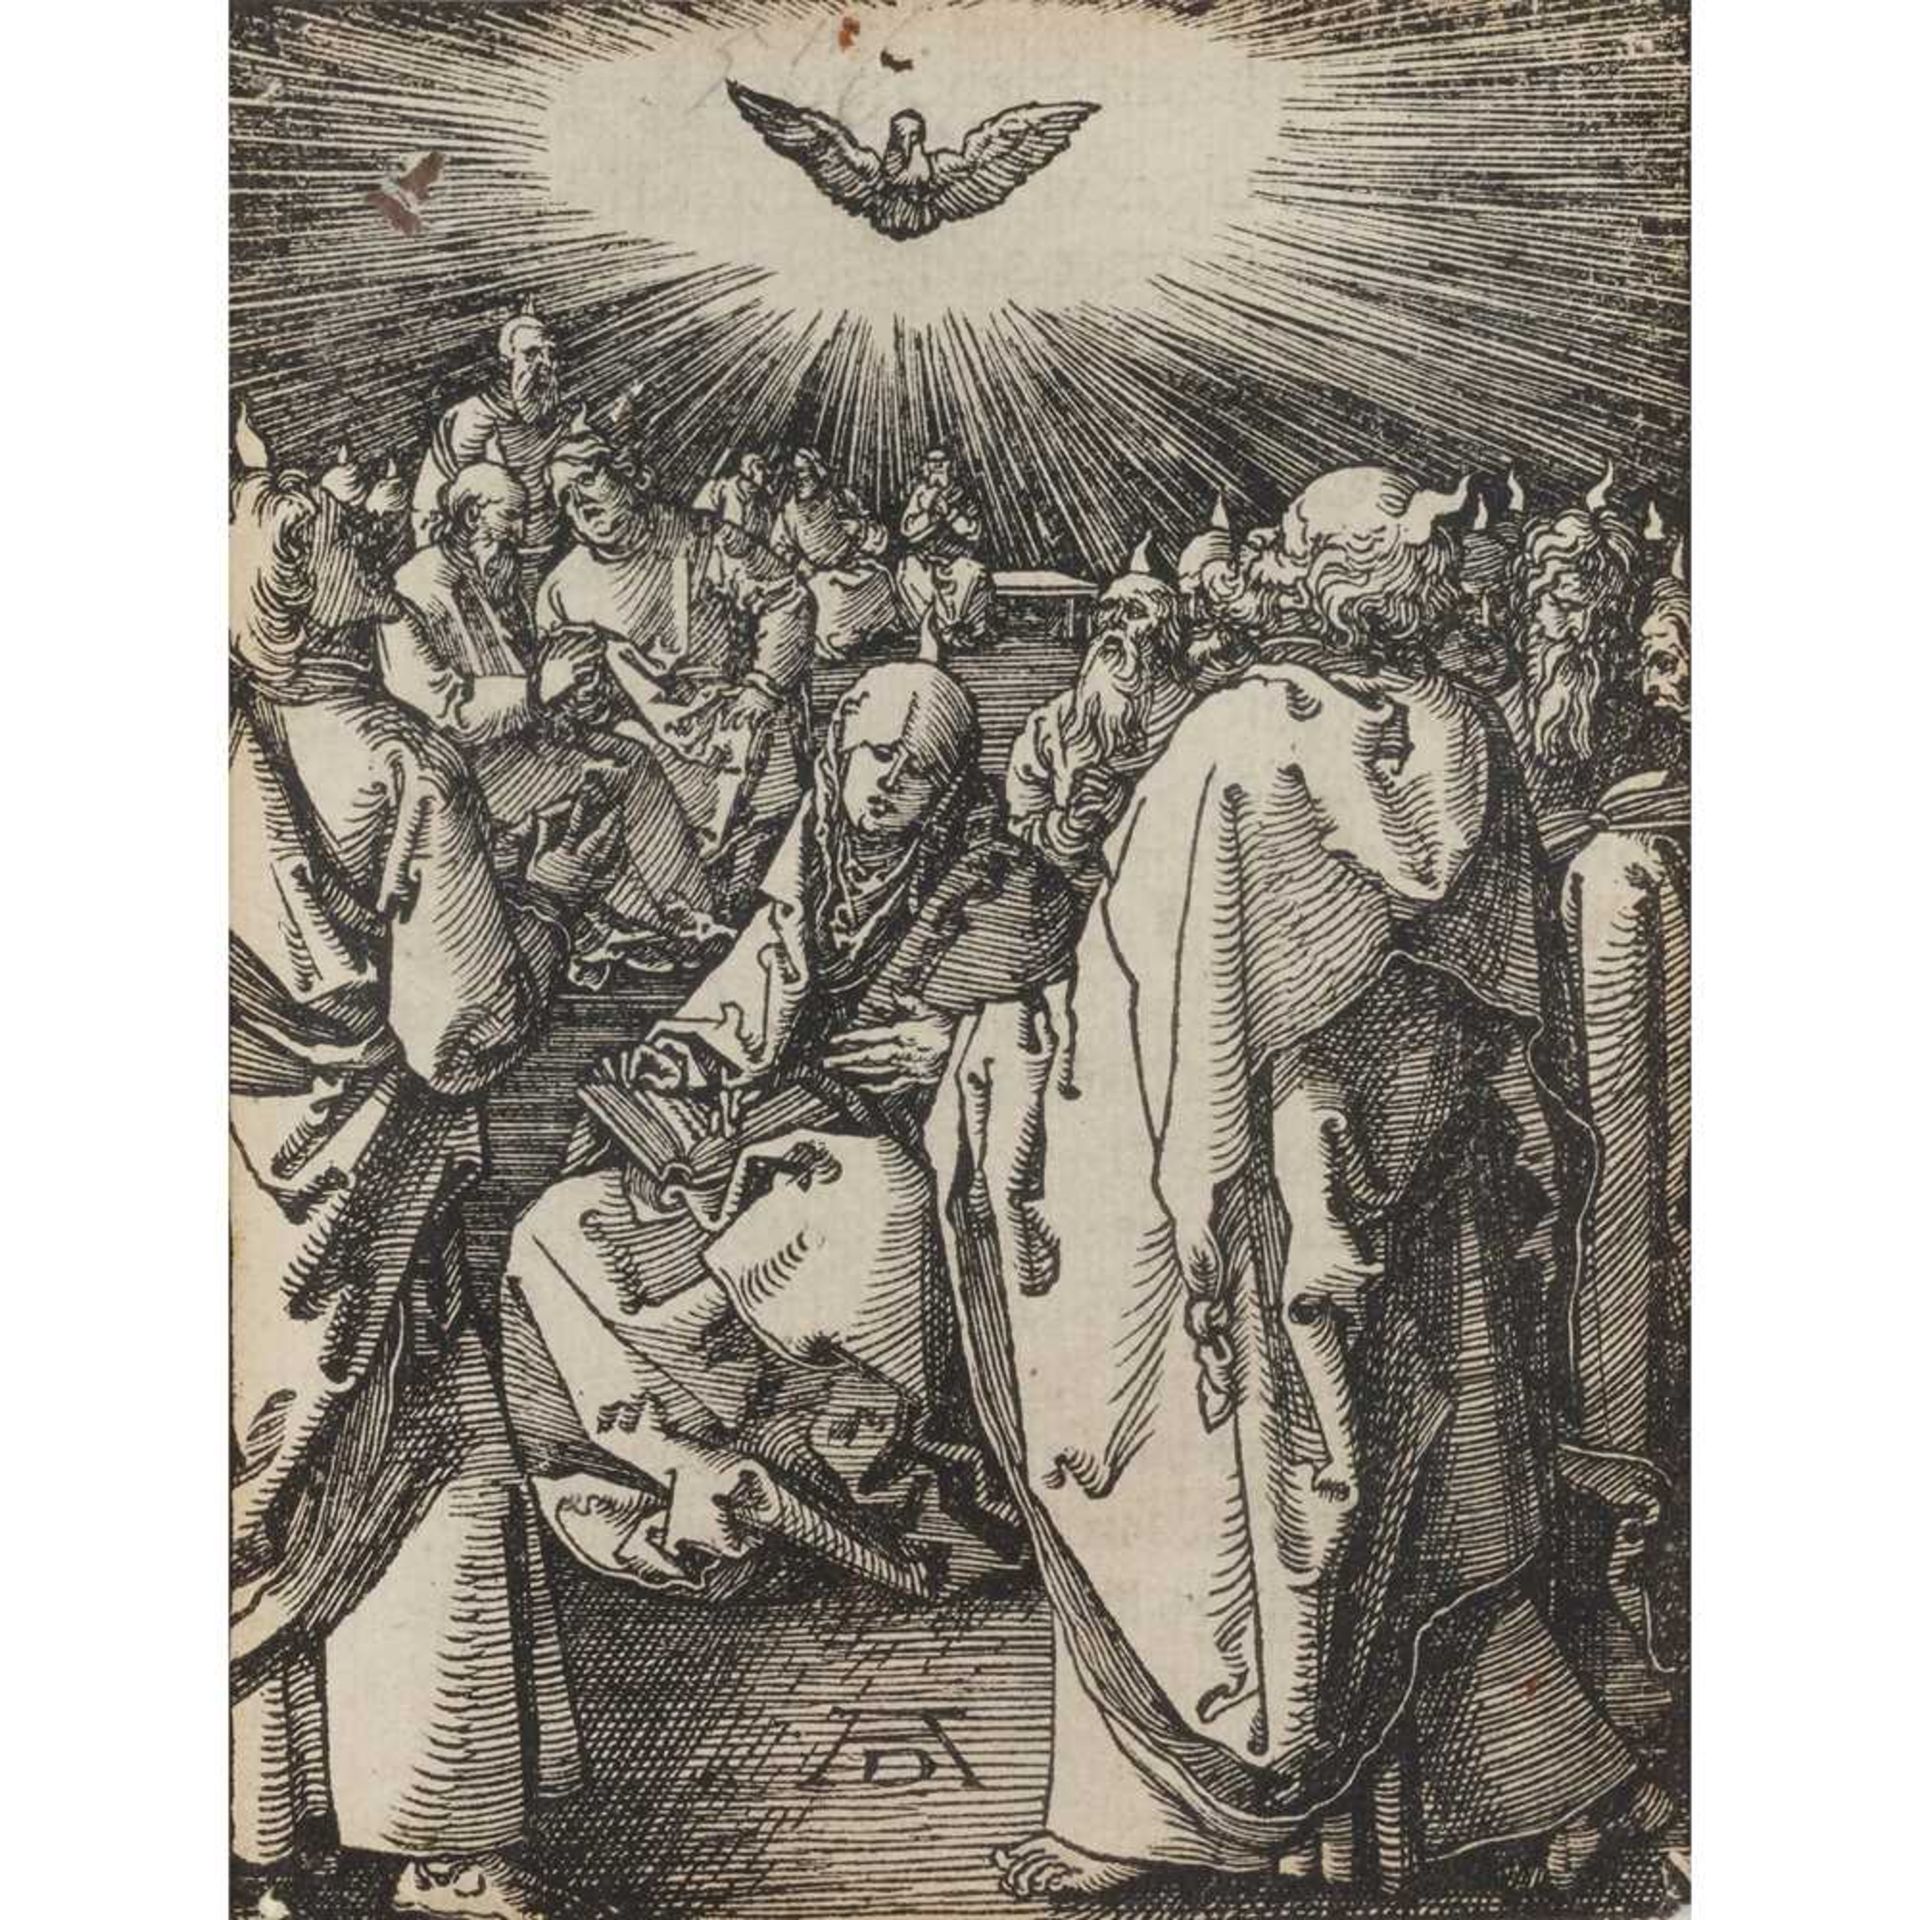 ALBRECHT DURER (GERMAN 1471-1528) PENTECOST, FROM 'THE SMALL PASSION' (BARTSCH 51)